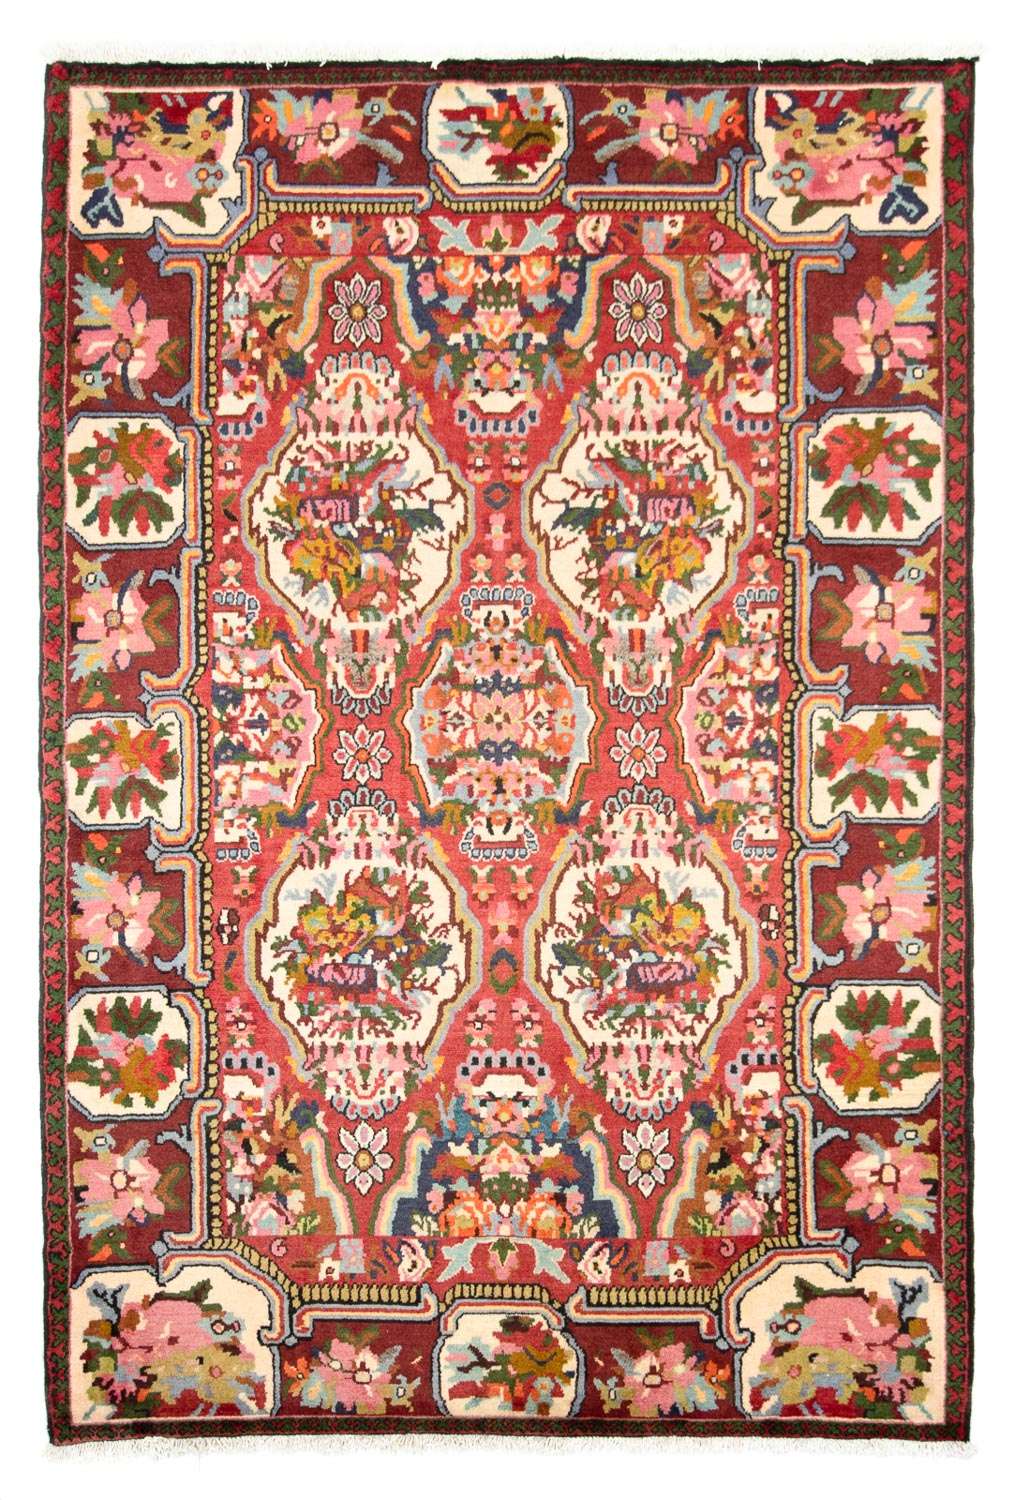 Tapis persan - Nomadic - 197 x 136 cm - rouge foncé